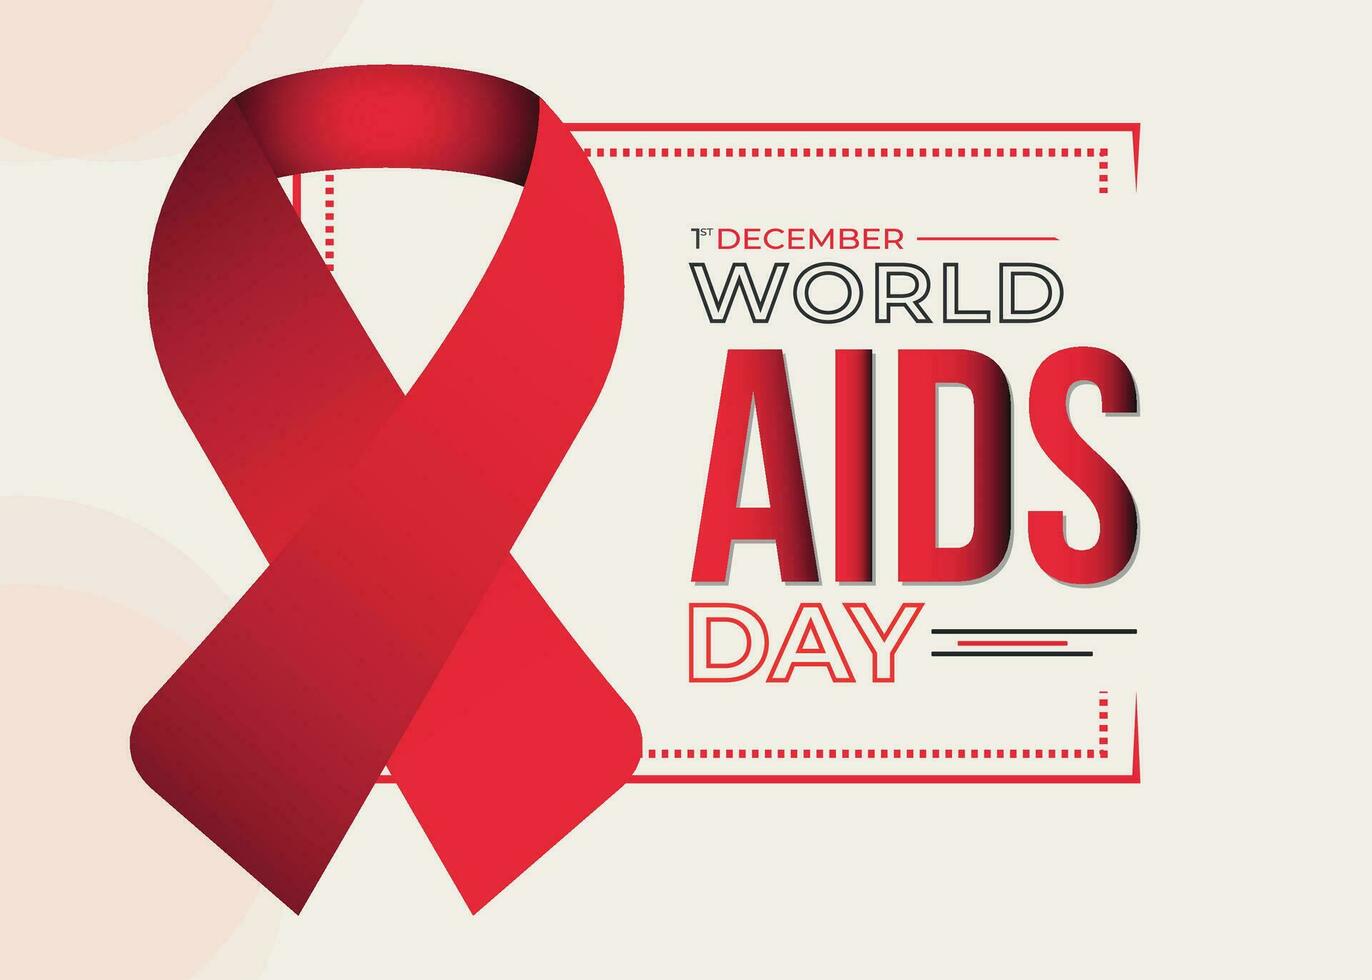 AIDS dag post ontwerp. vector